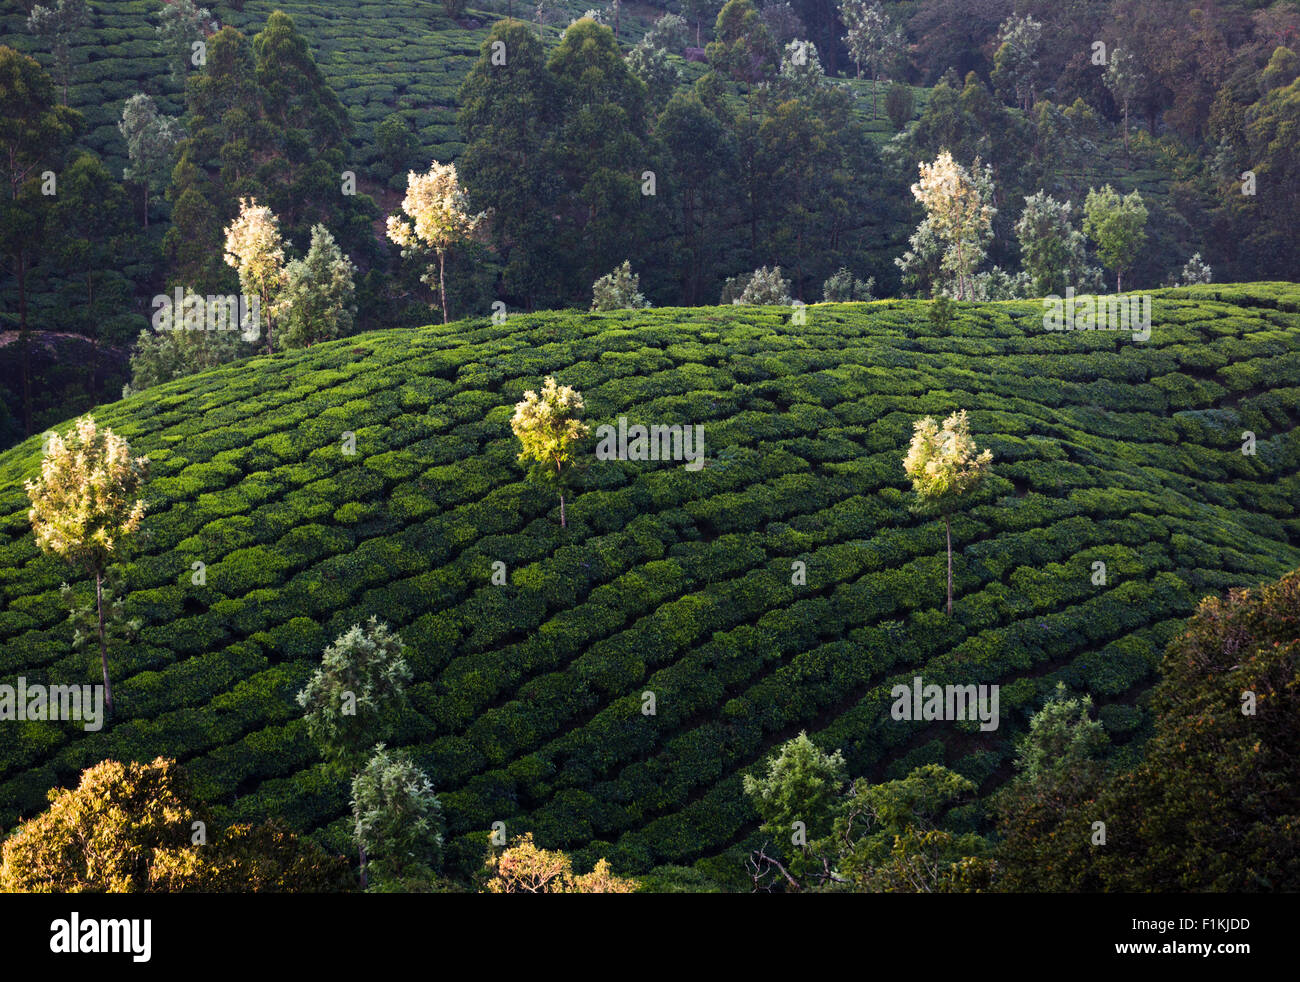 La plantation de thé de Pothamedu, donnent sur la Route Nationale 49 près de Munnar, Inde. Silver oak arbres fournissent de l'humidité pour les plantes de thé. Banque D'Images